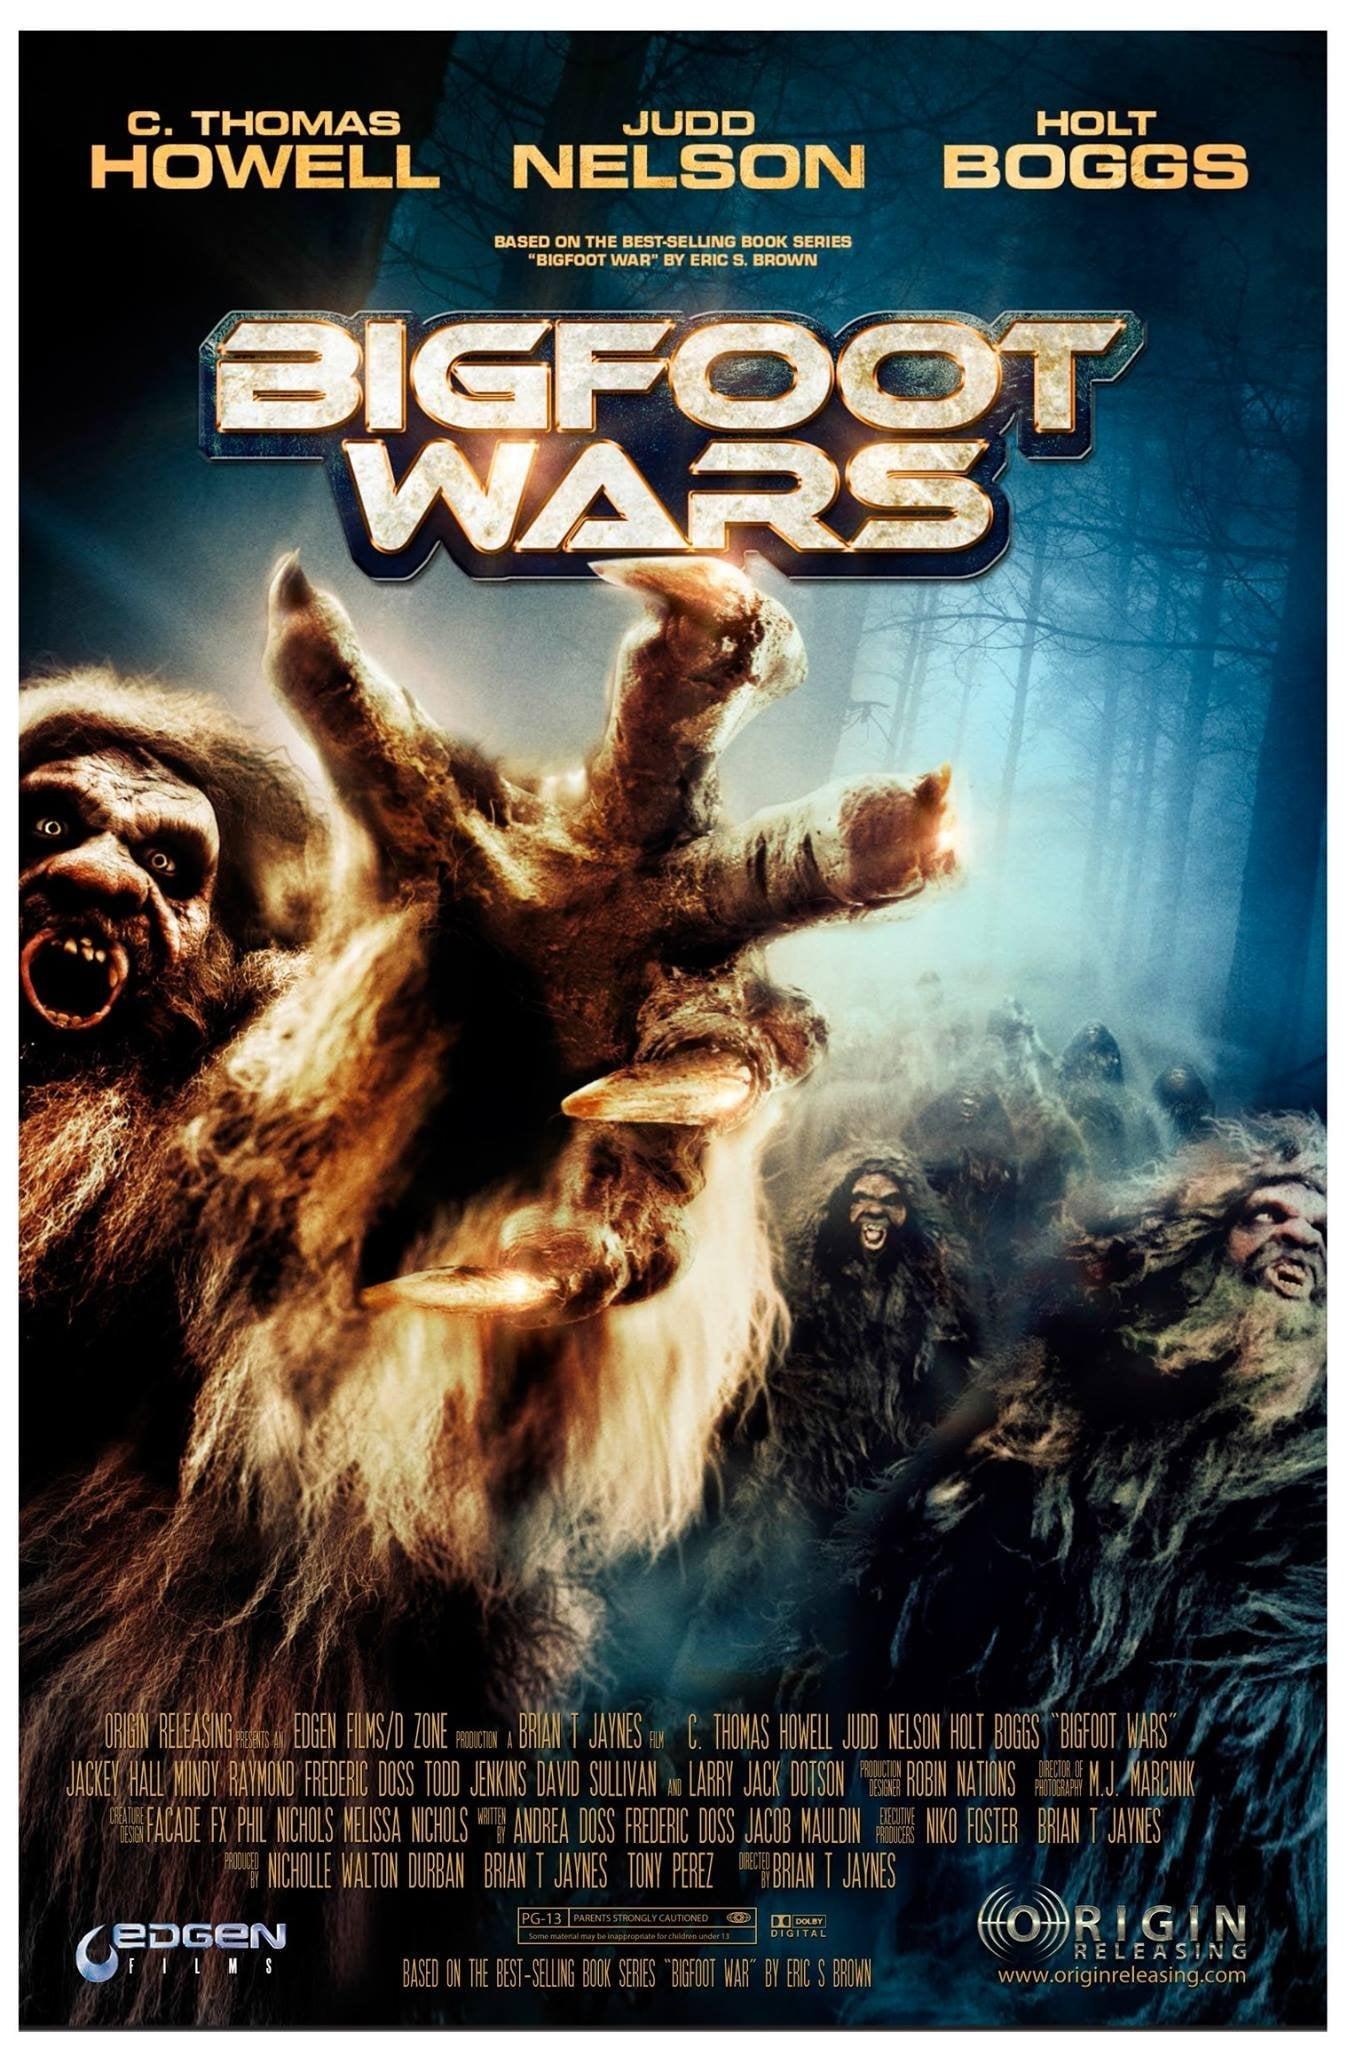 Bigfoot Wars poster